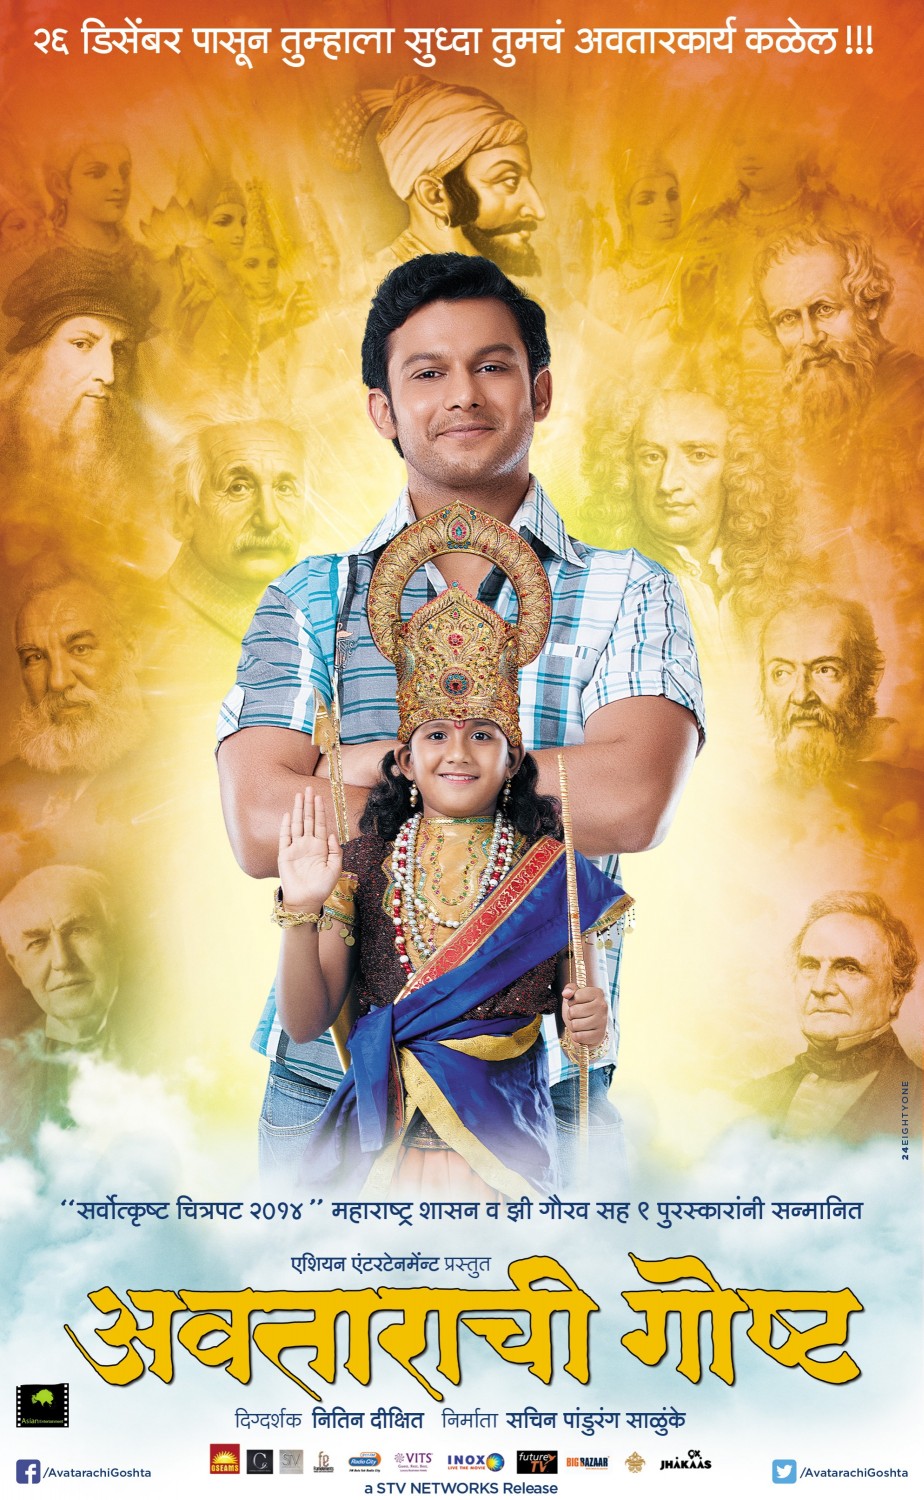 Extra Large Movie Poster Image for Avatarachi Goshta (#3 of 4)